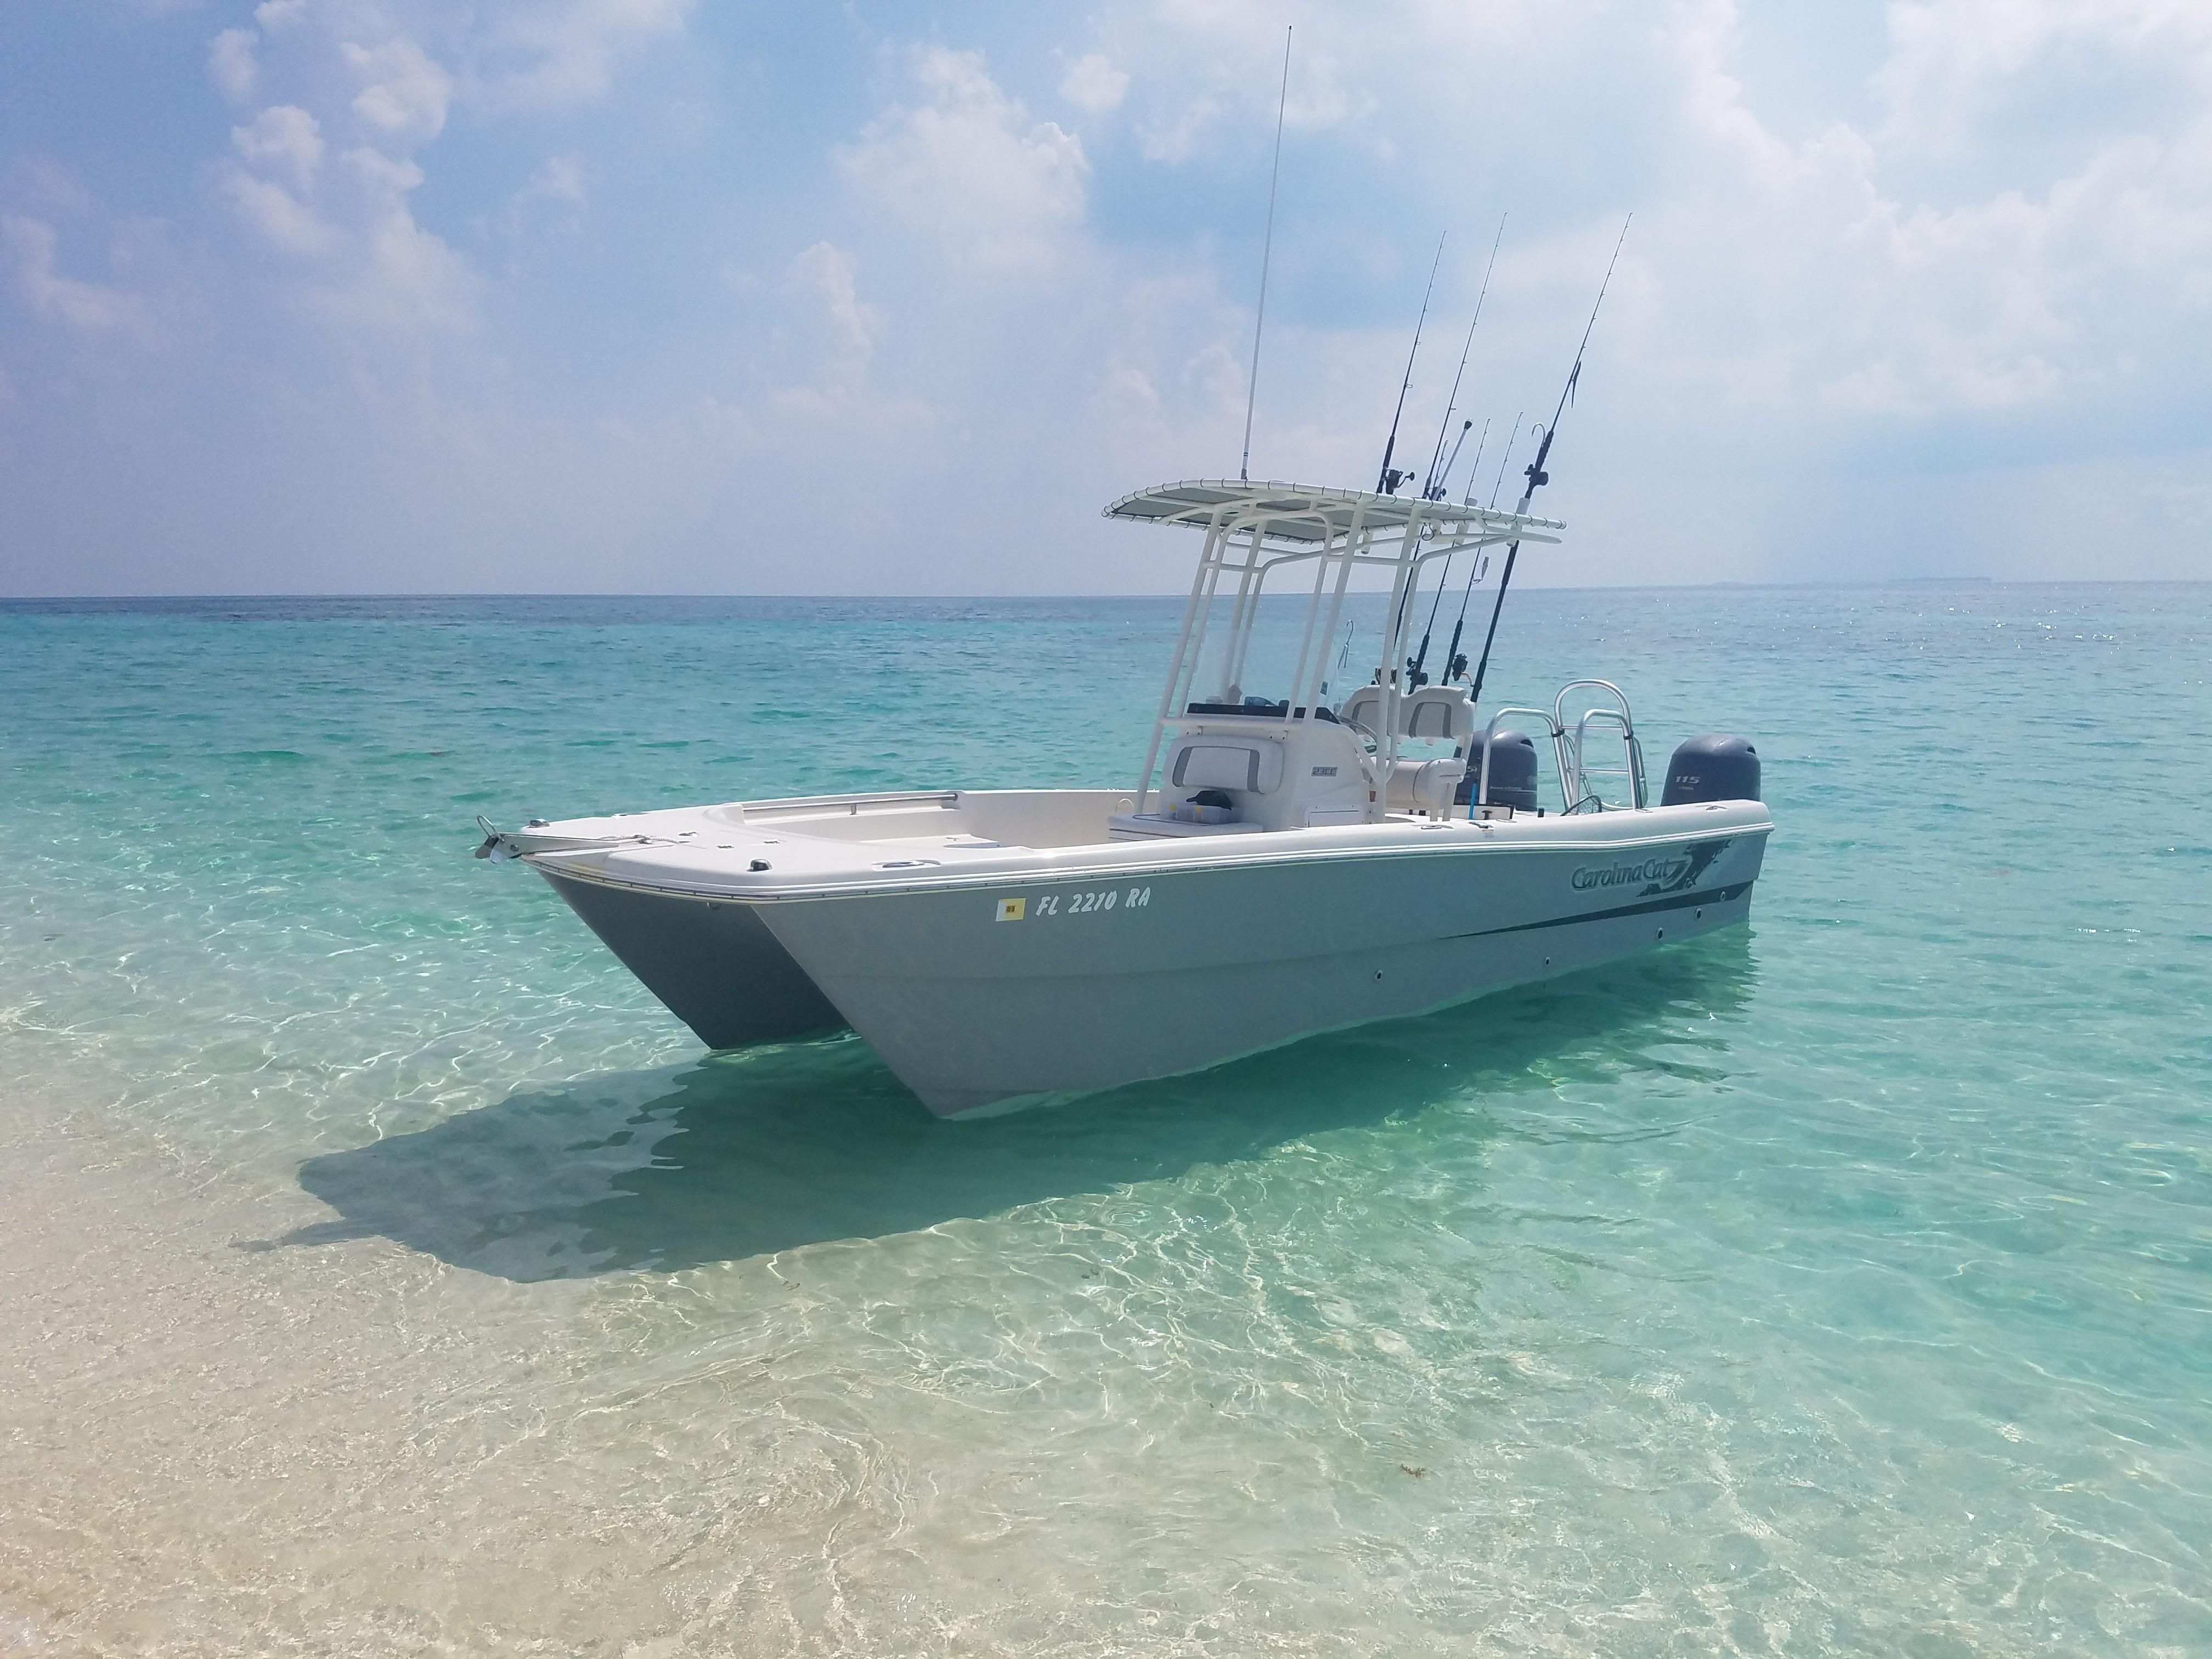 2015 Carolina Cat 23 CC Power Catamaran for sale - YachtWorld